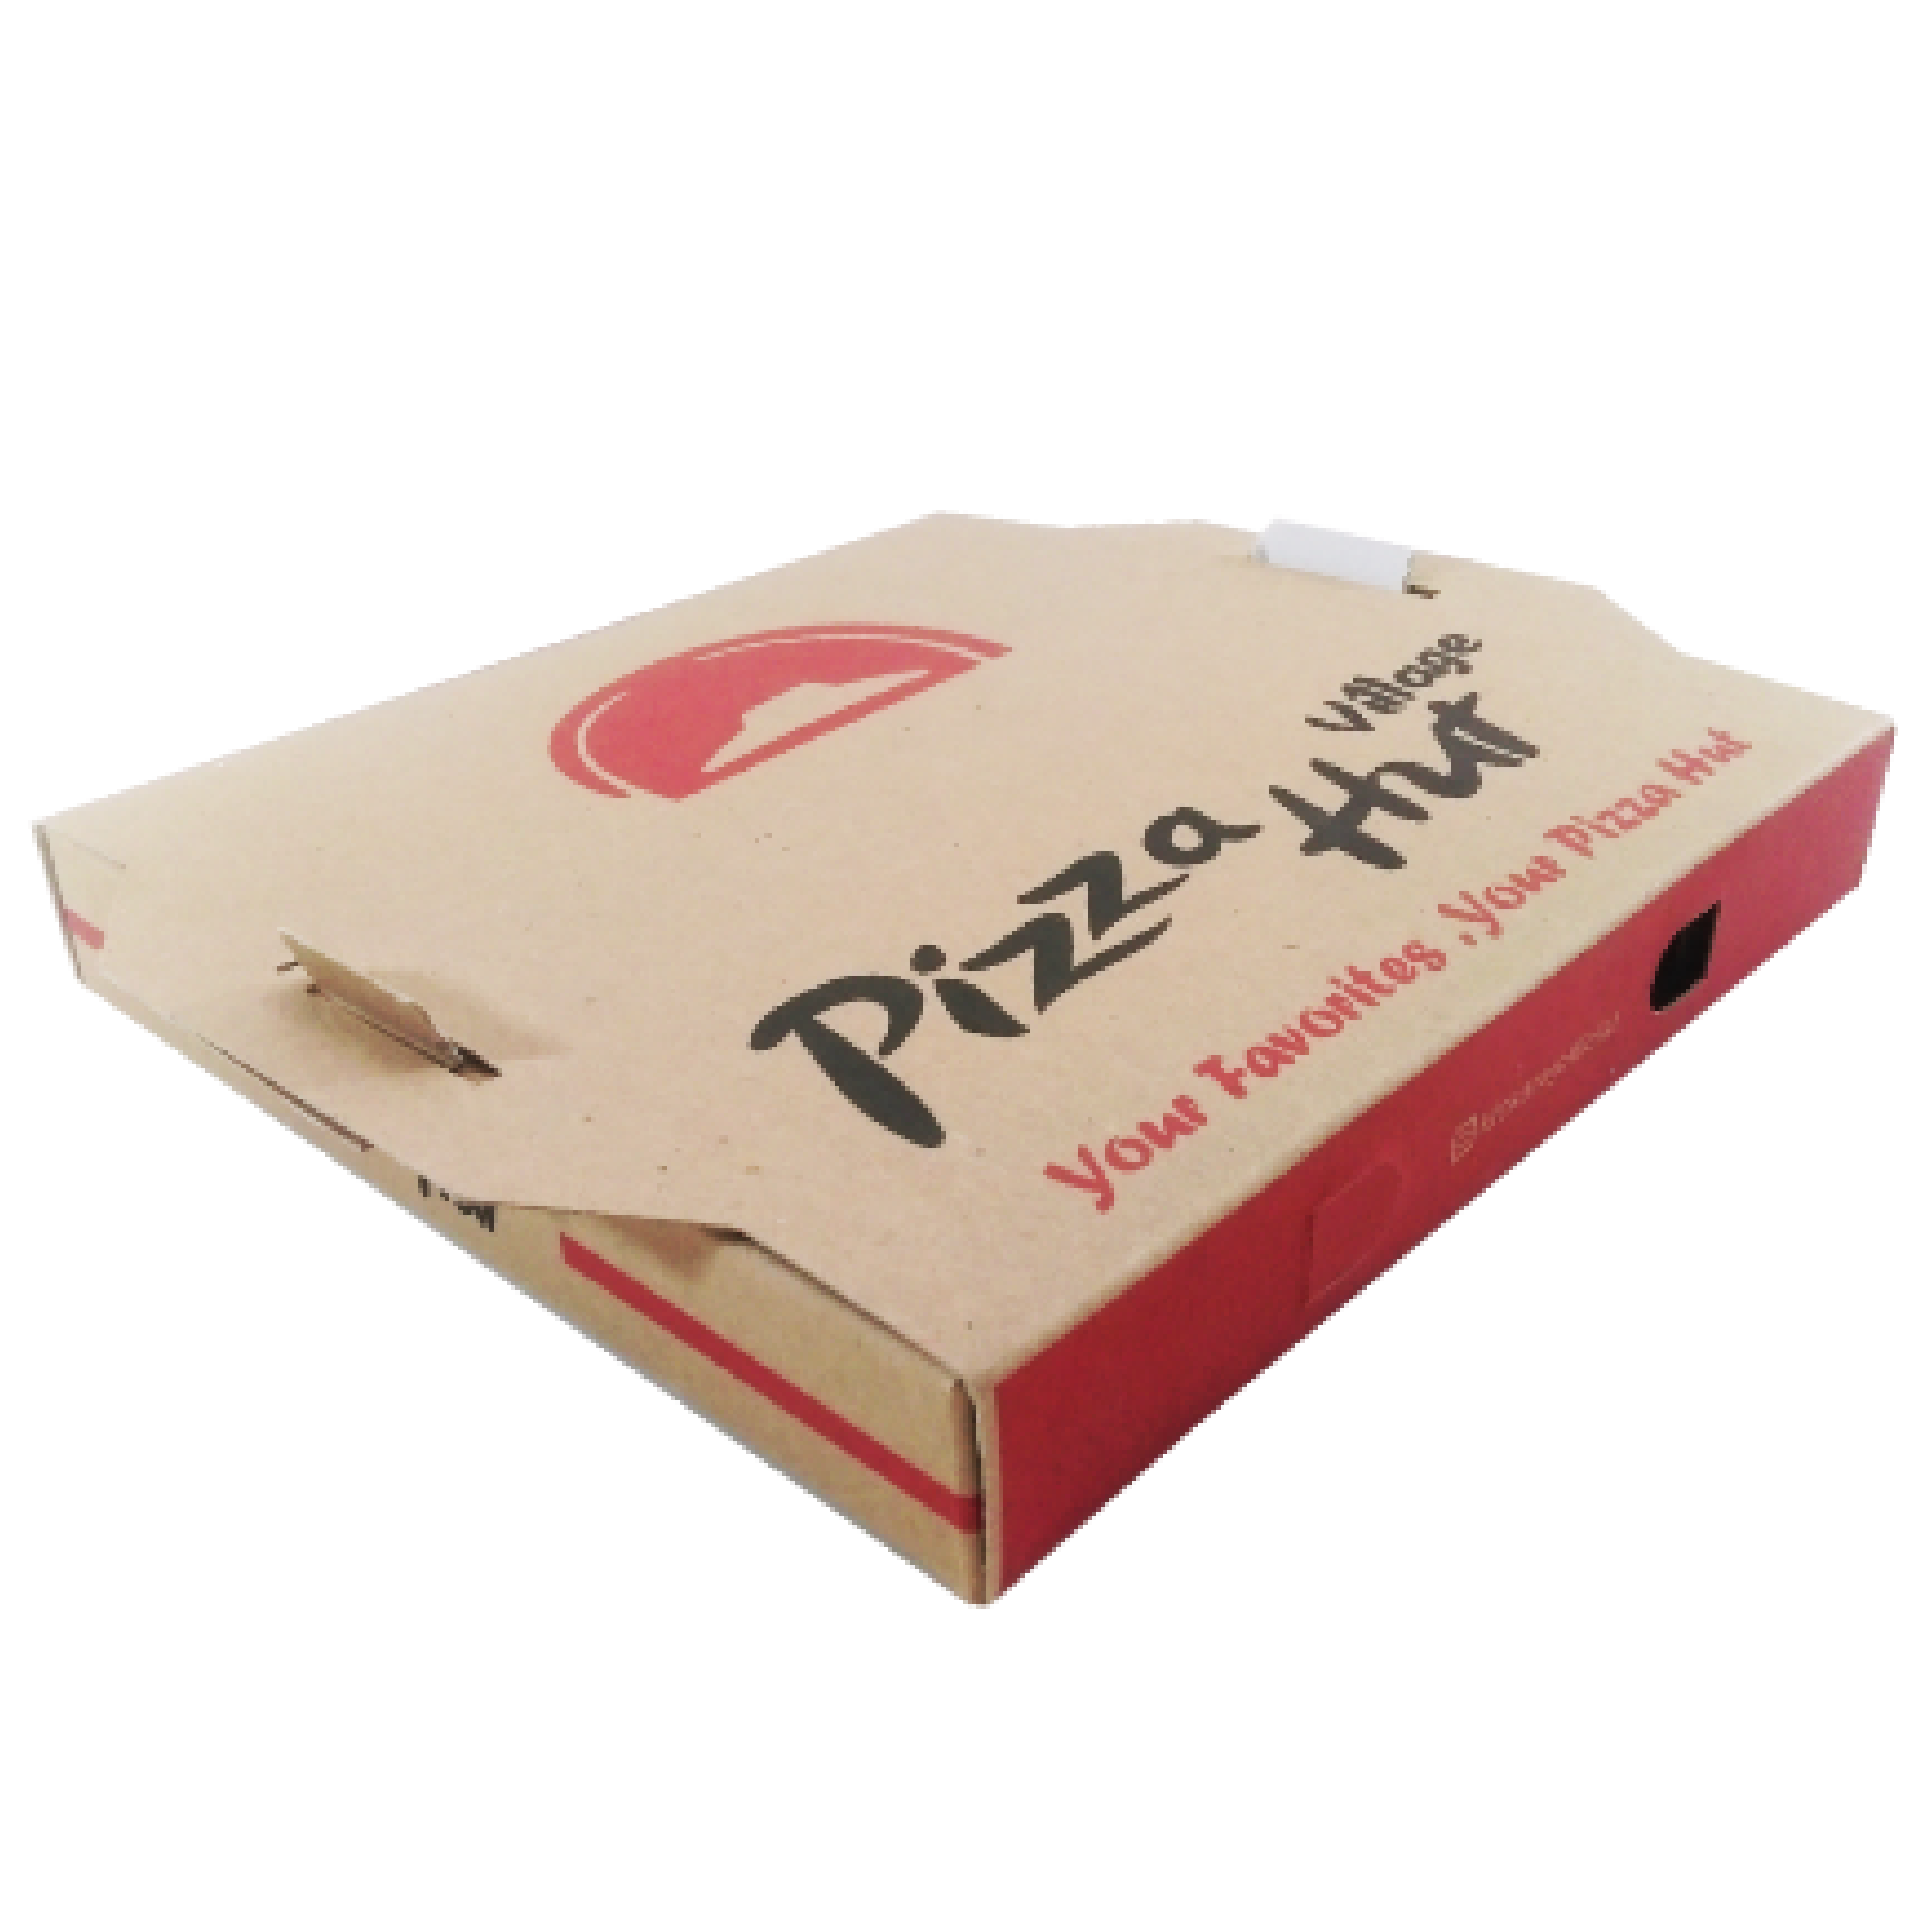 جعبه پیتزا دسته دار 0۳ - جعبه پیتزا - تولید کننده جعبه پیتزا ارزان و با کیفیت